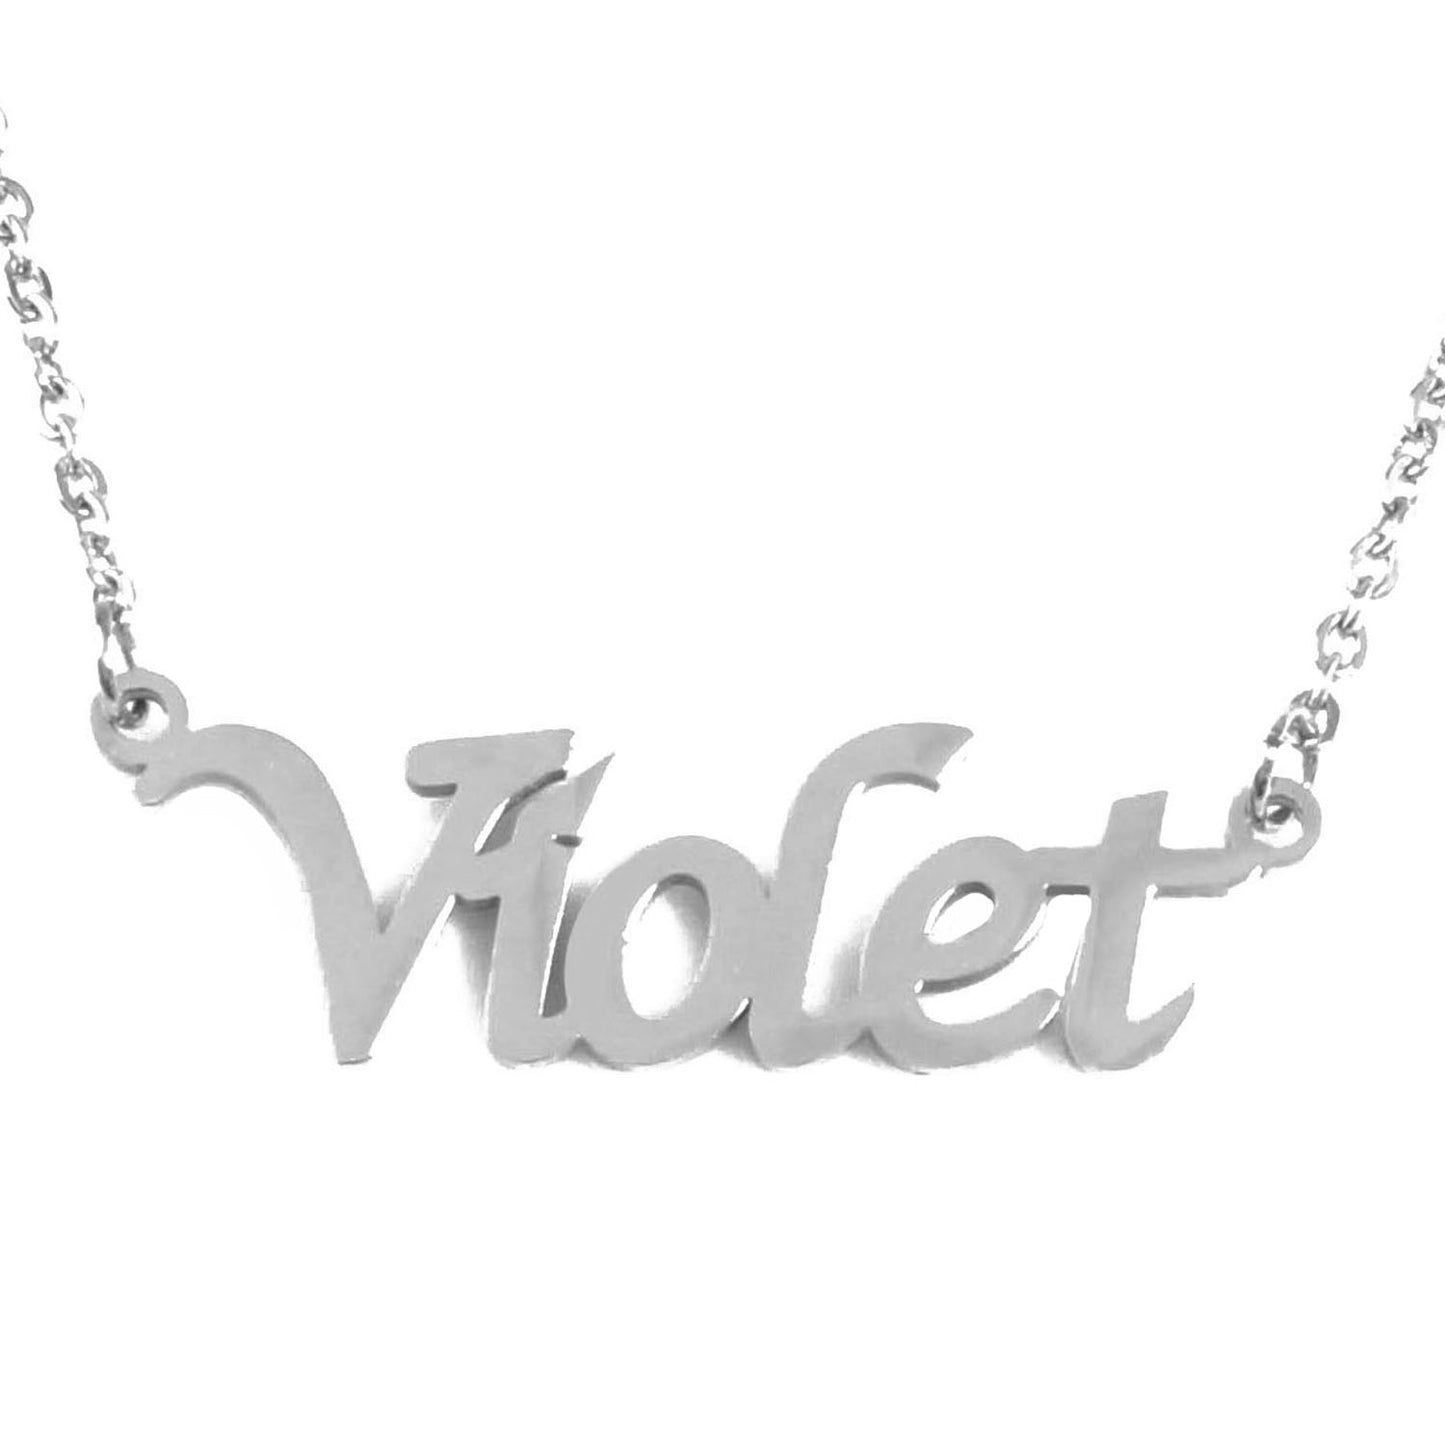 Violet Name Necklace